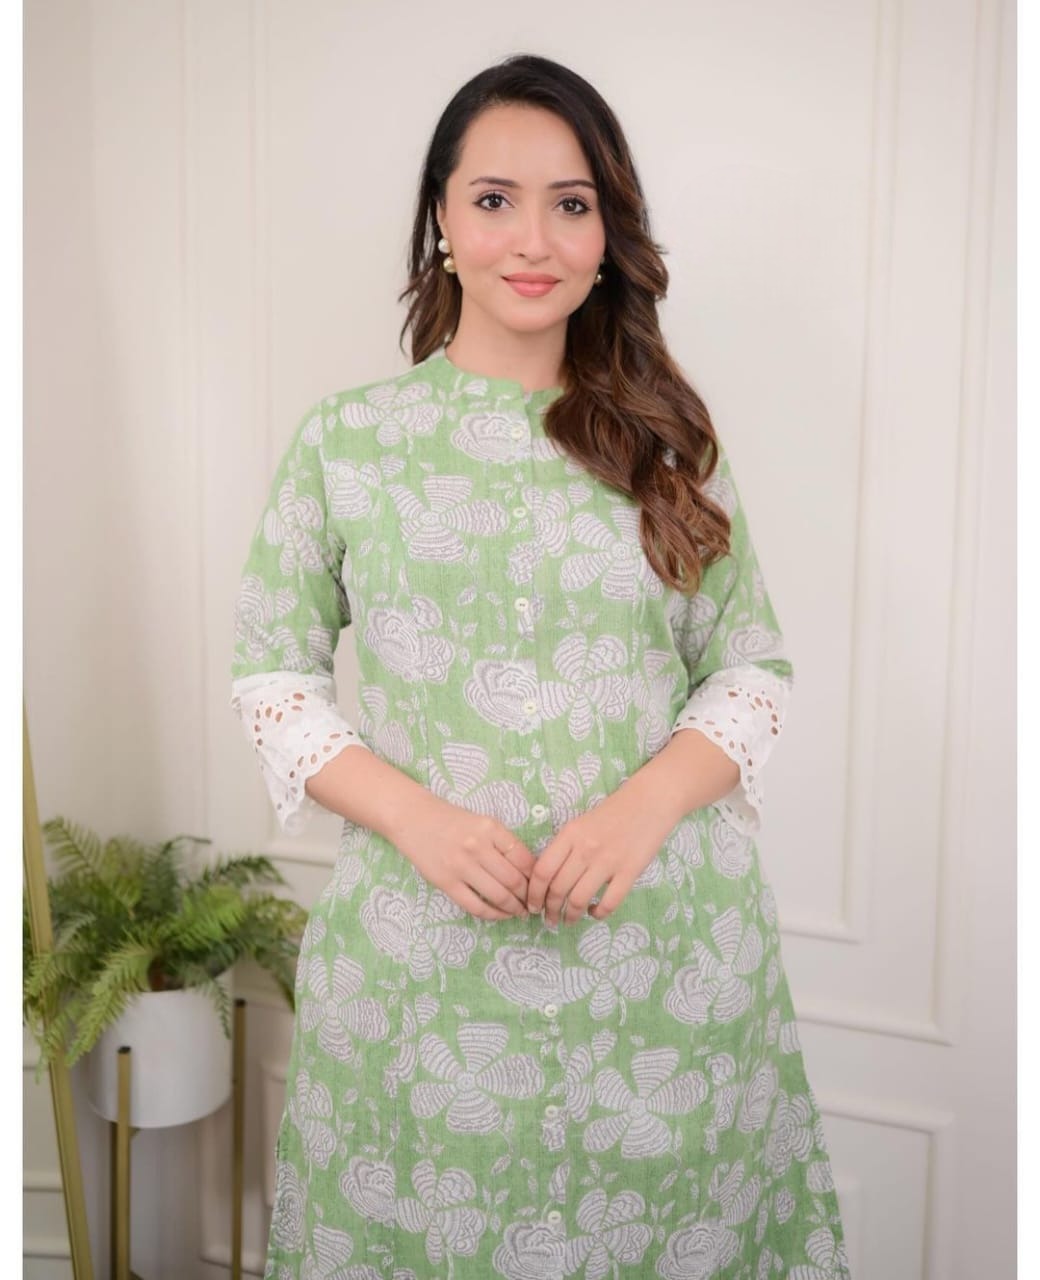 Beautiful cotton aline pattern kurt-pant set